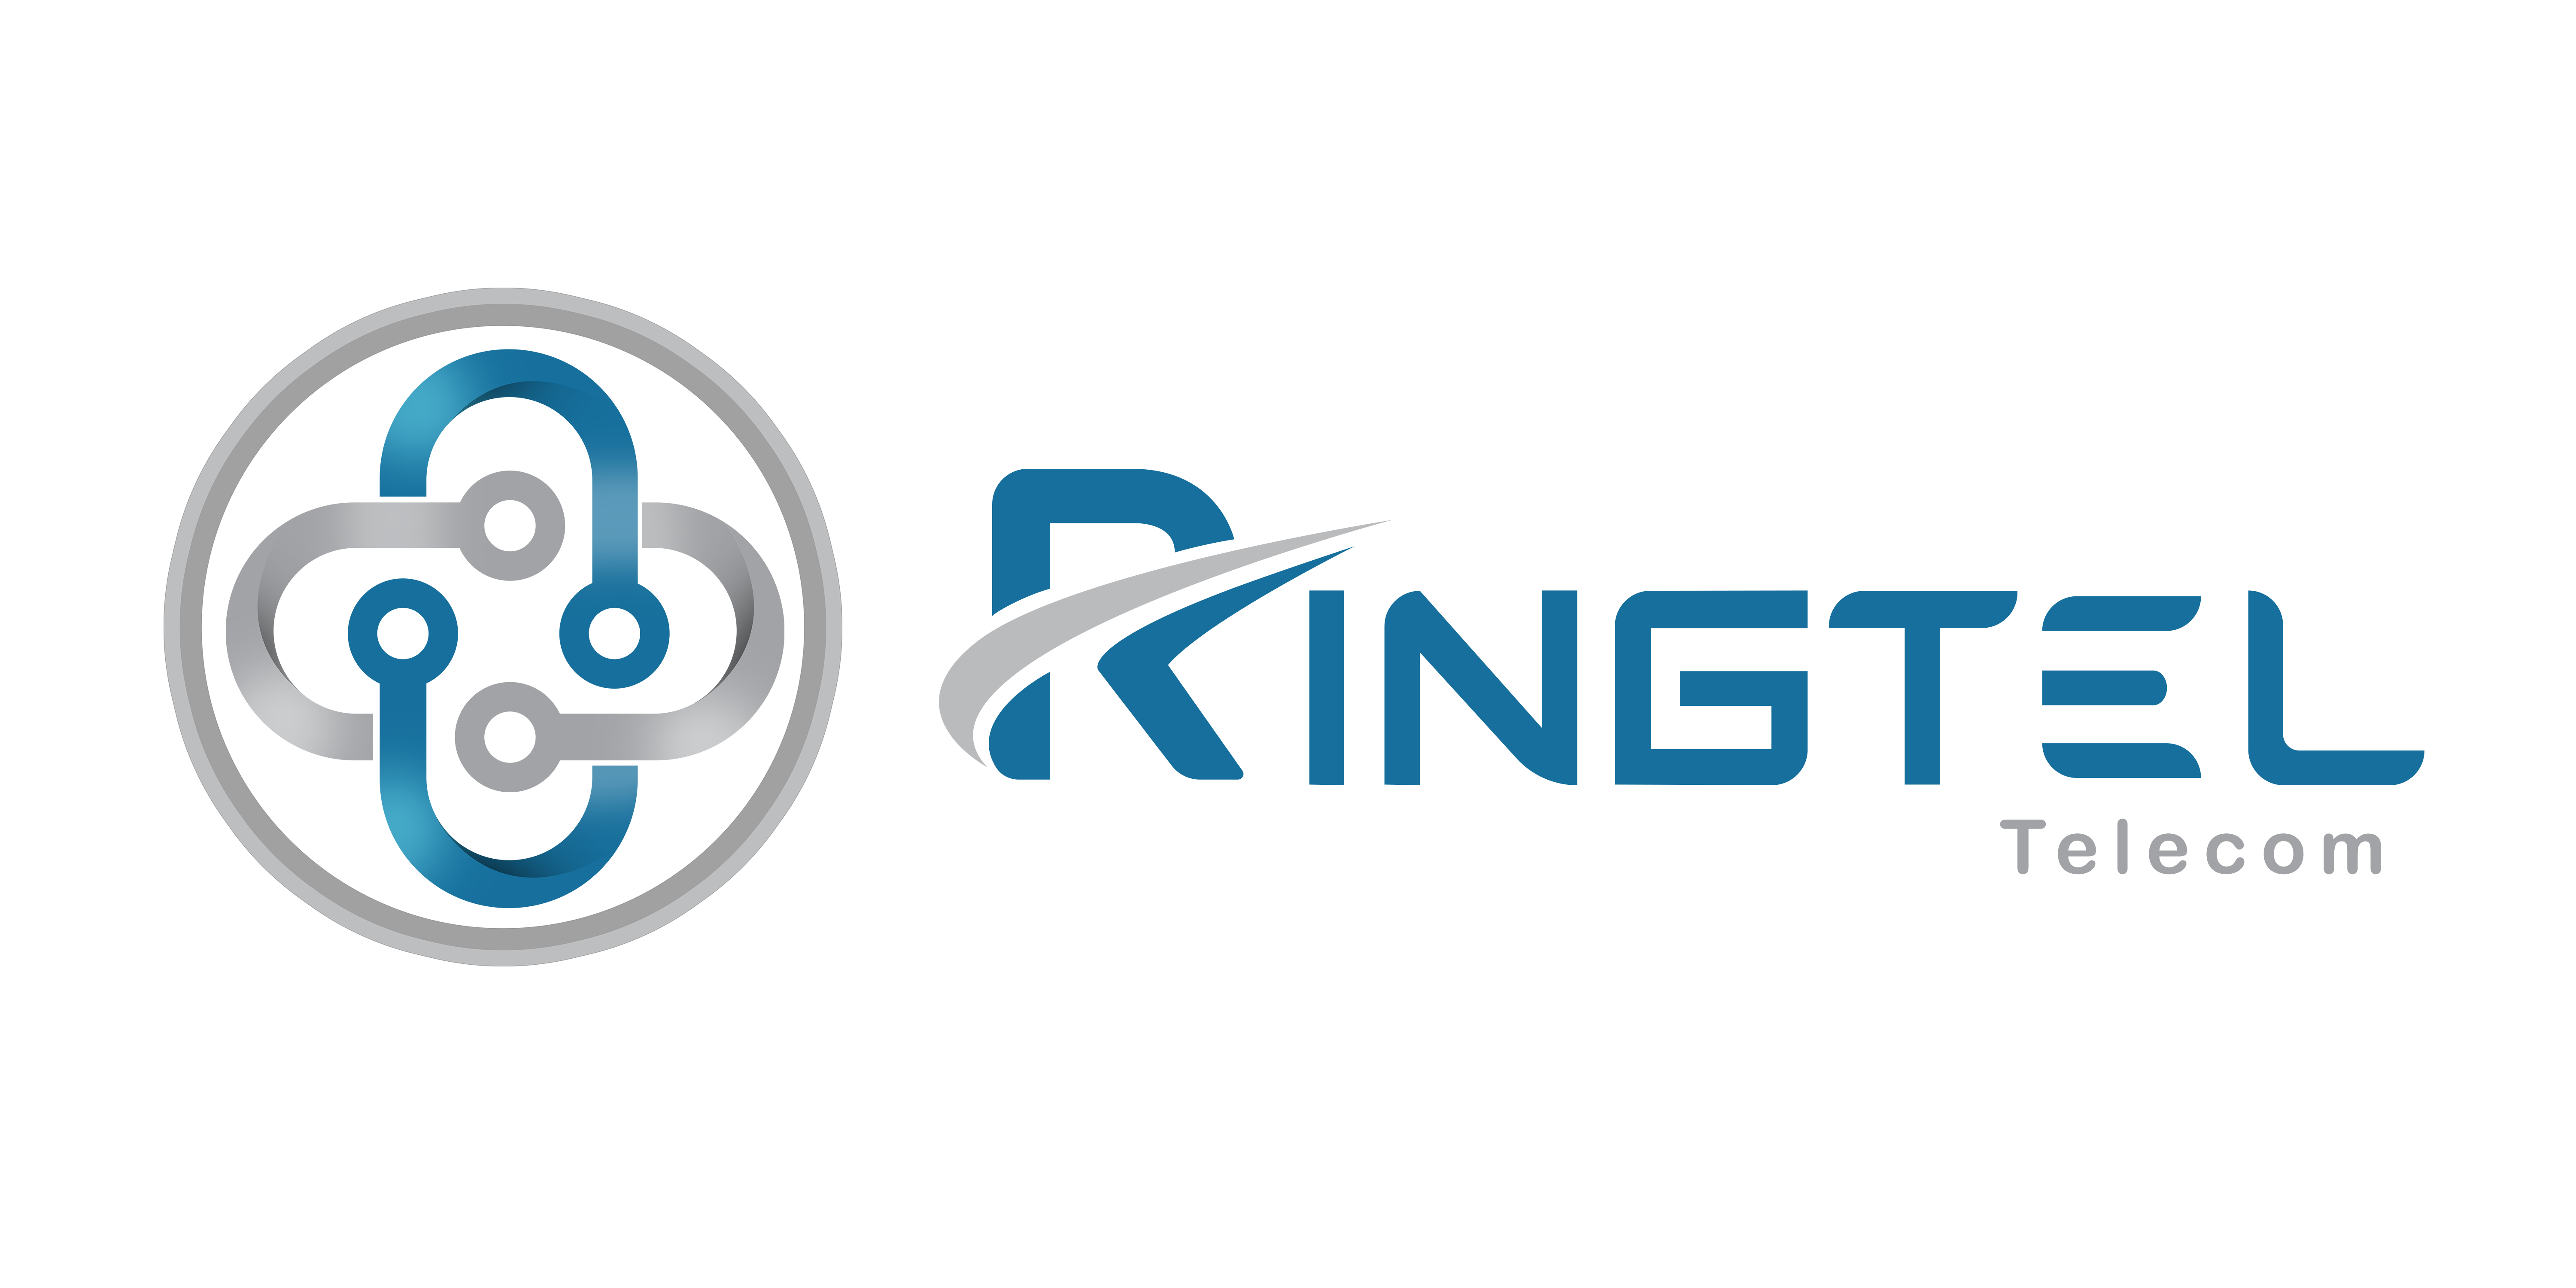 Ringtel Telecom